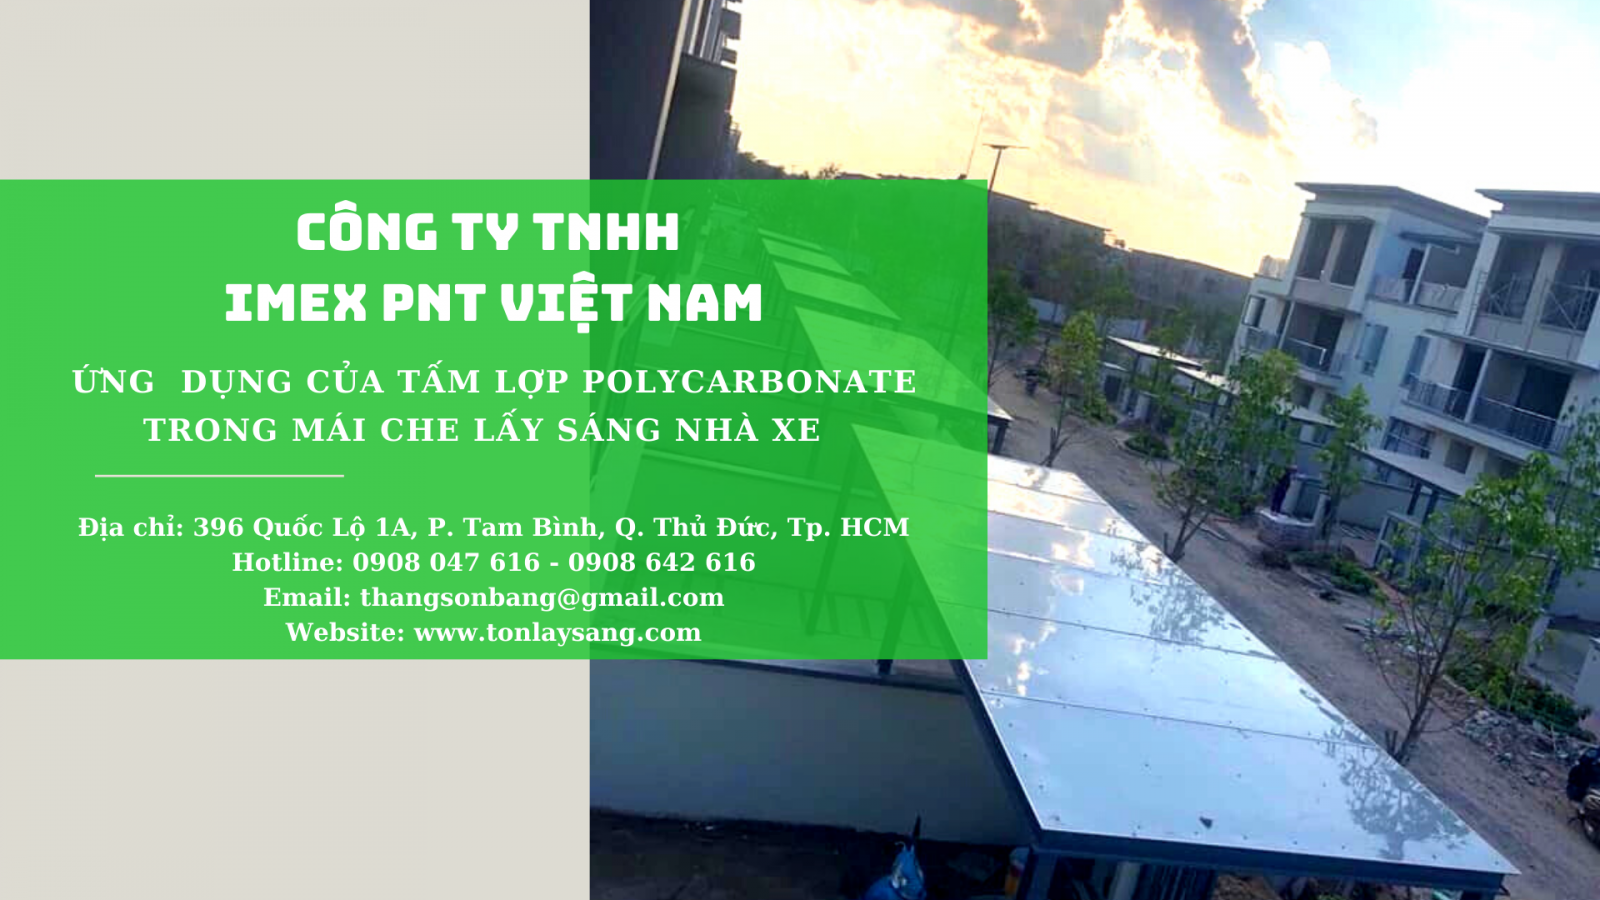 Imex PNT Việt Nam chuyên cung cấp tấm lấy sáng Polycarbonate chất lượng